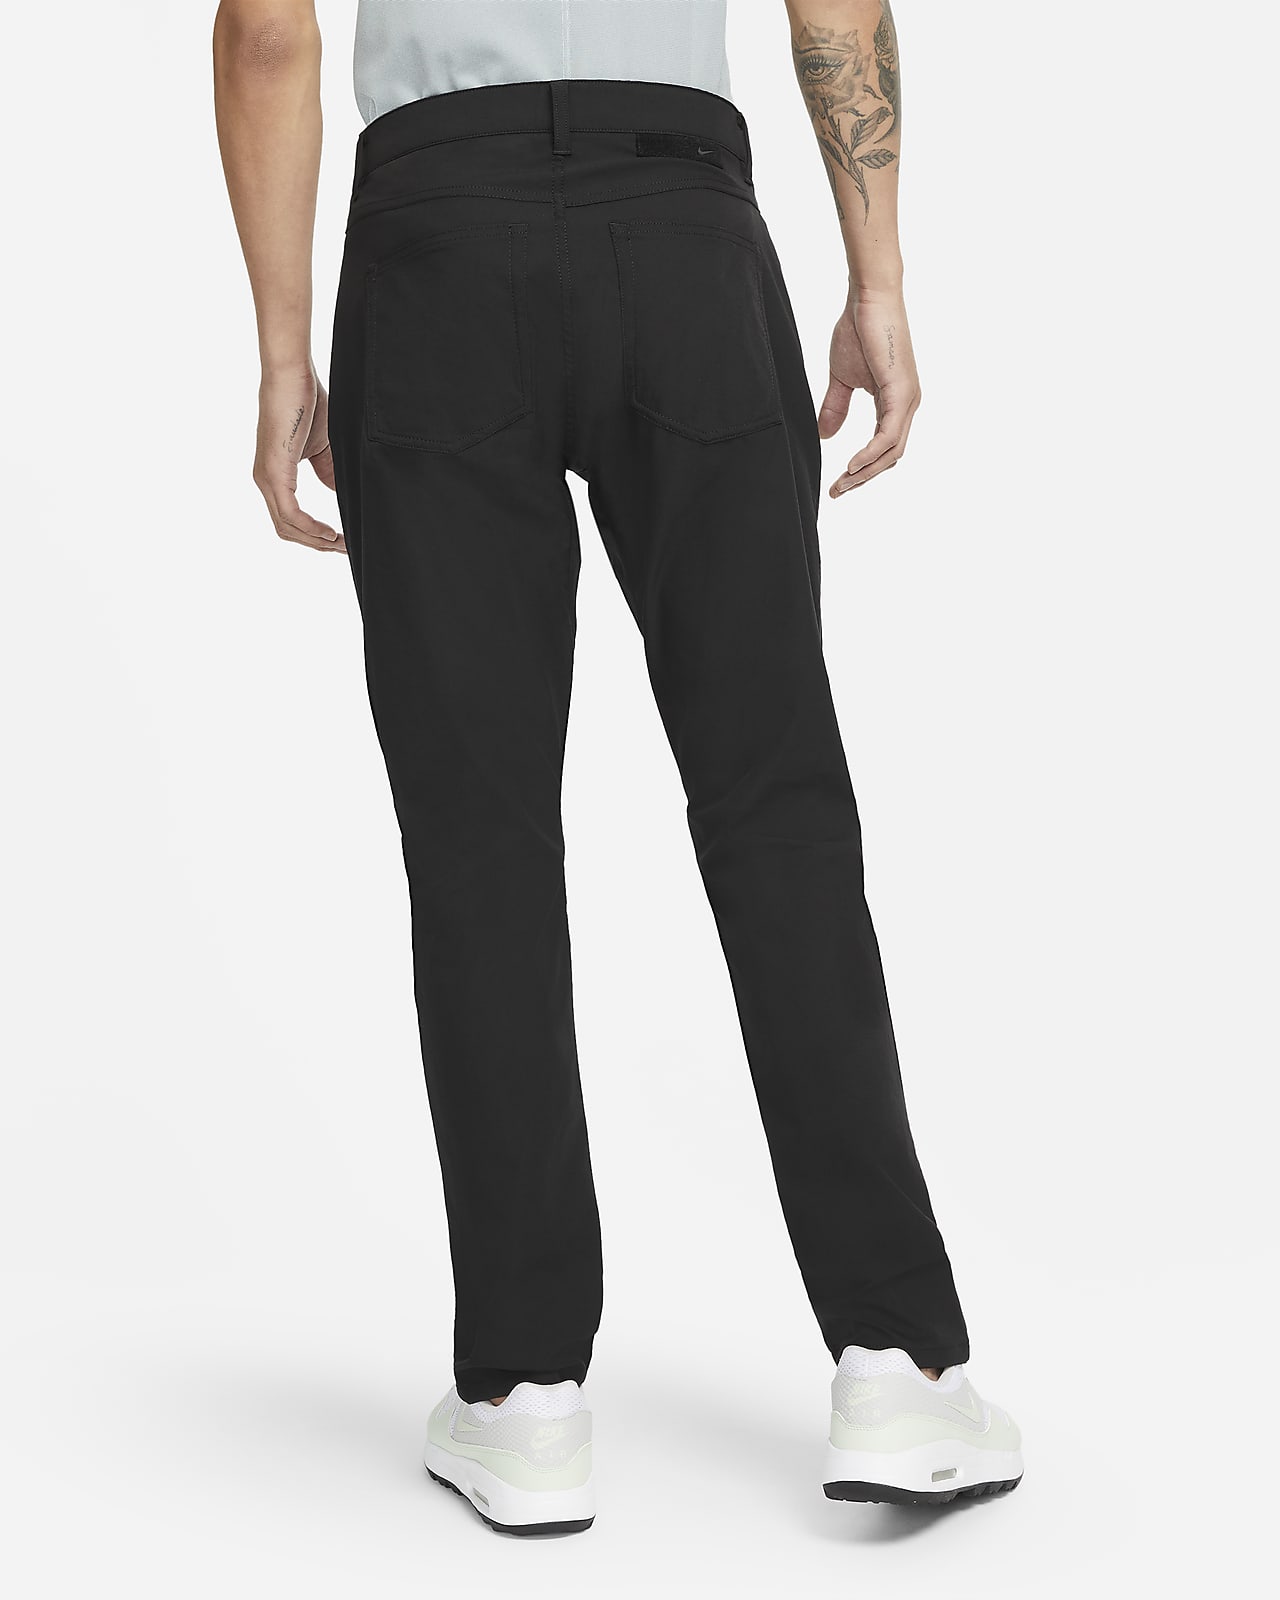 Nike Dri-FIT Repel Men's 5-Pocket Slim-Fit Golf Trousers. Nike SG